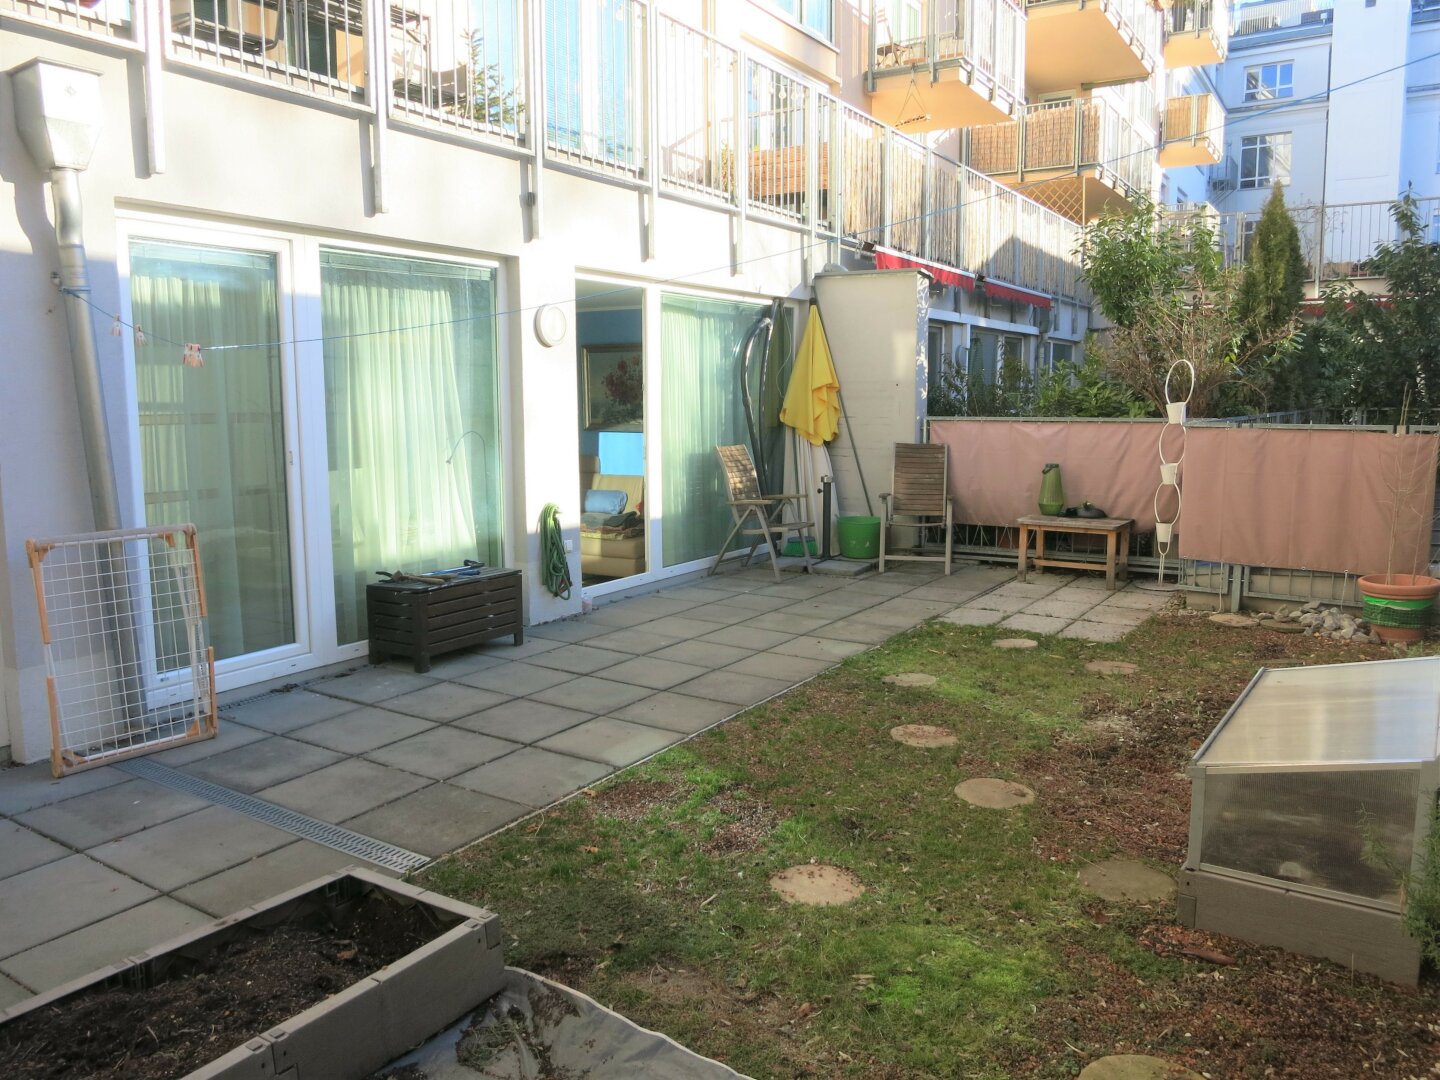 Familienwohnung mit Gartenterasse und Garagenplatz in der Stadt